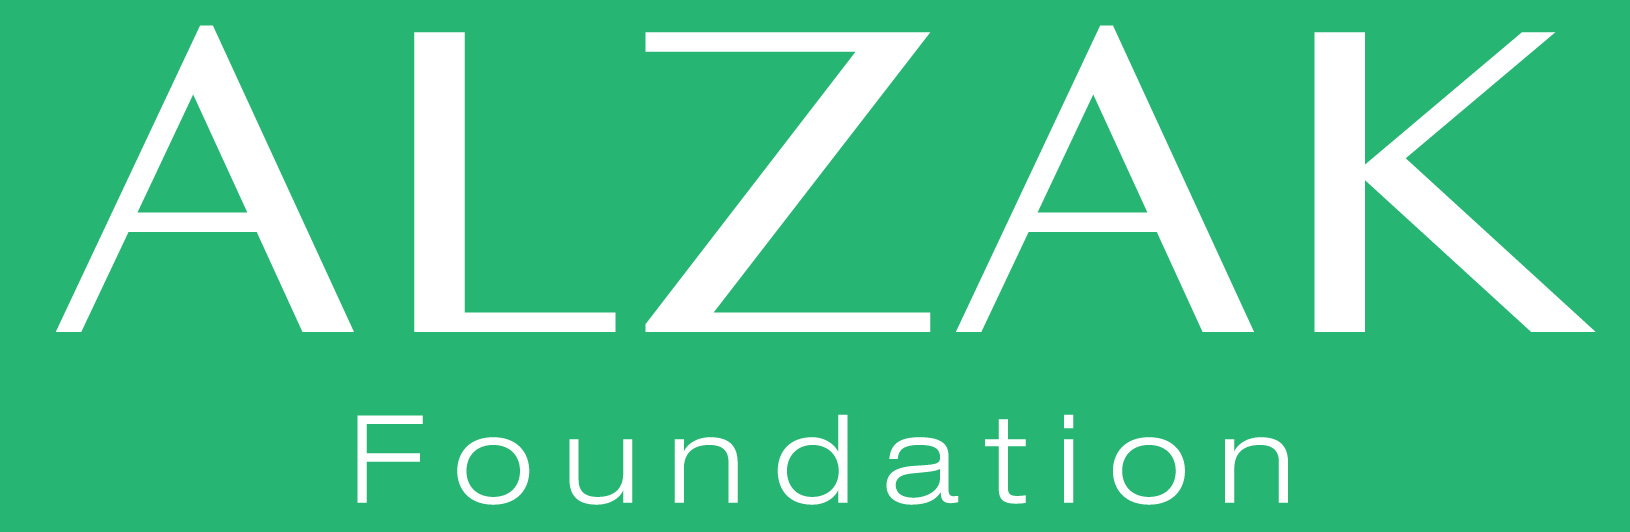 ALZAK Foundation, aliado educativo de la Fundación Ser Social